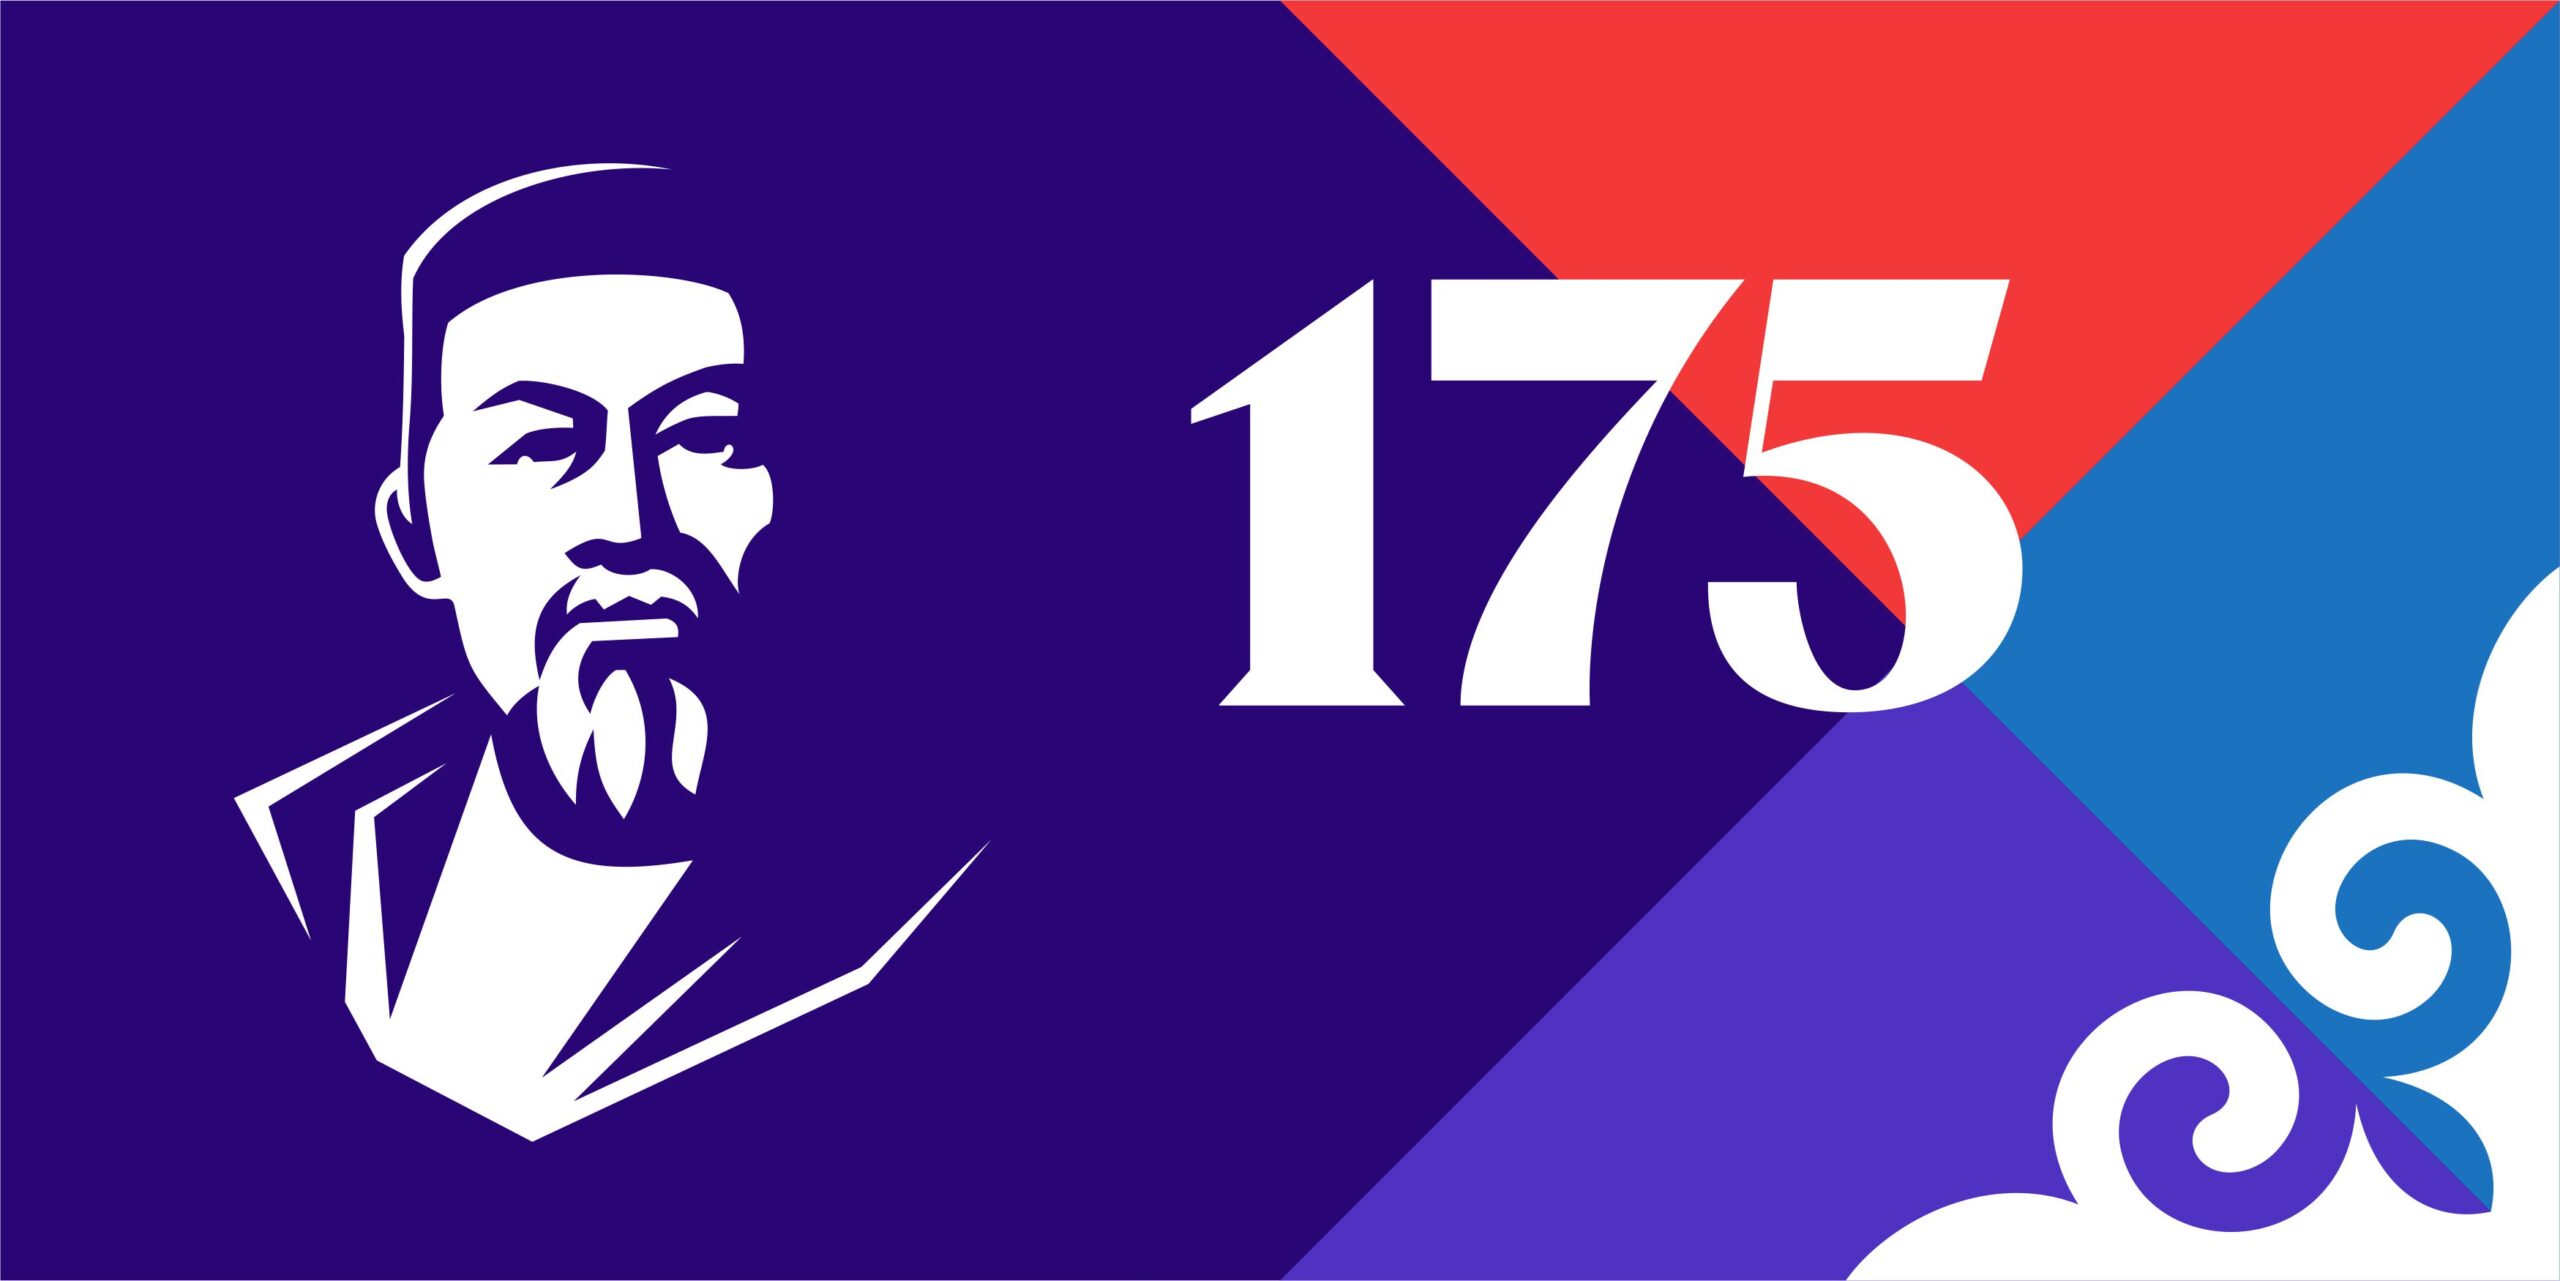 Разработан брендбук празднования 175-летнего юбилея со дня рождения Абая Кунанбайулы